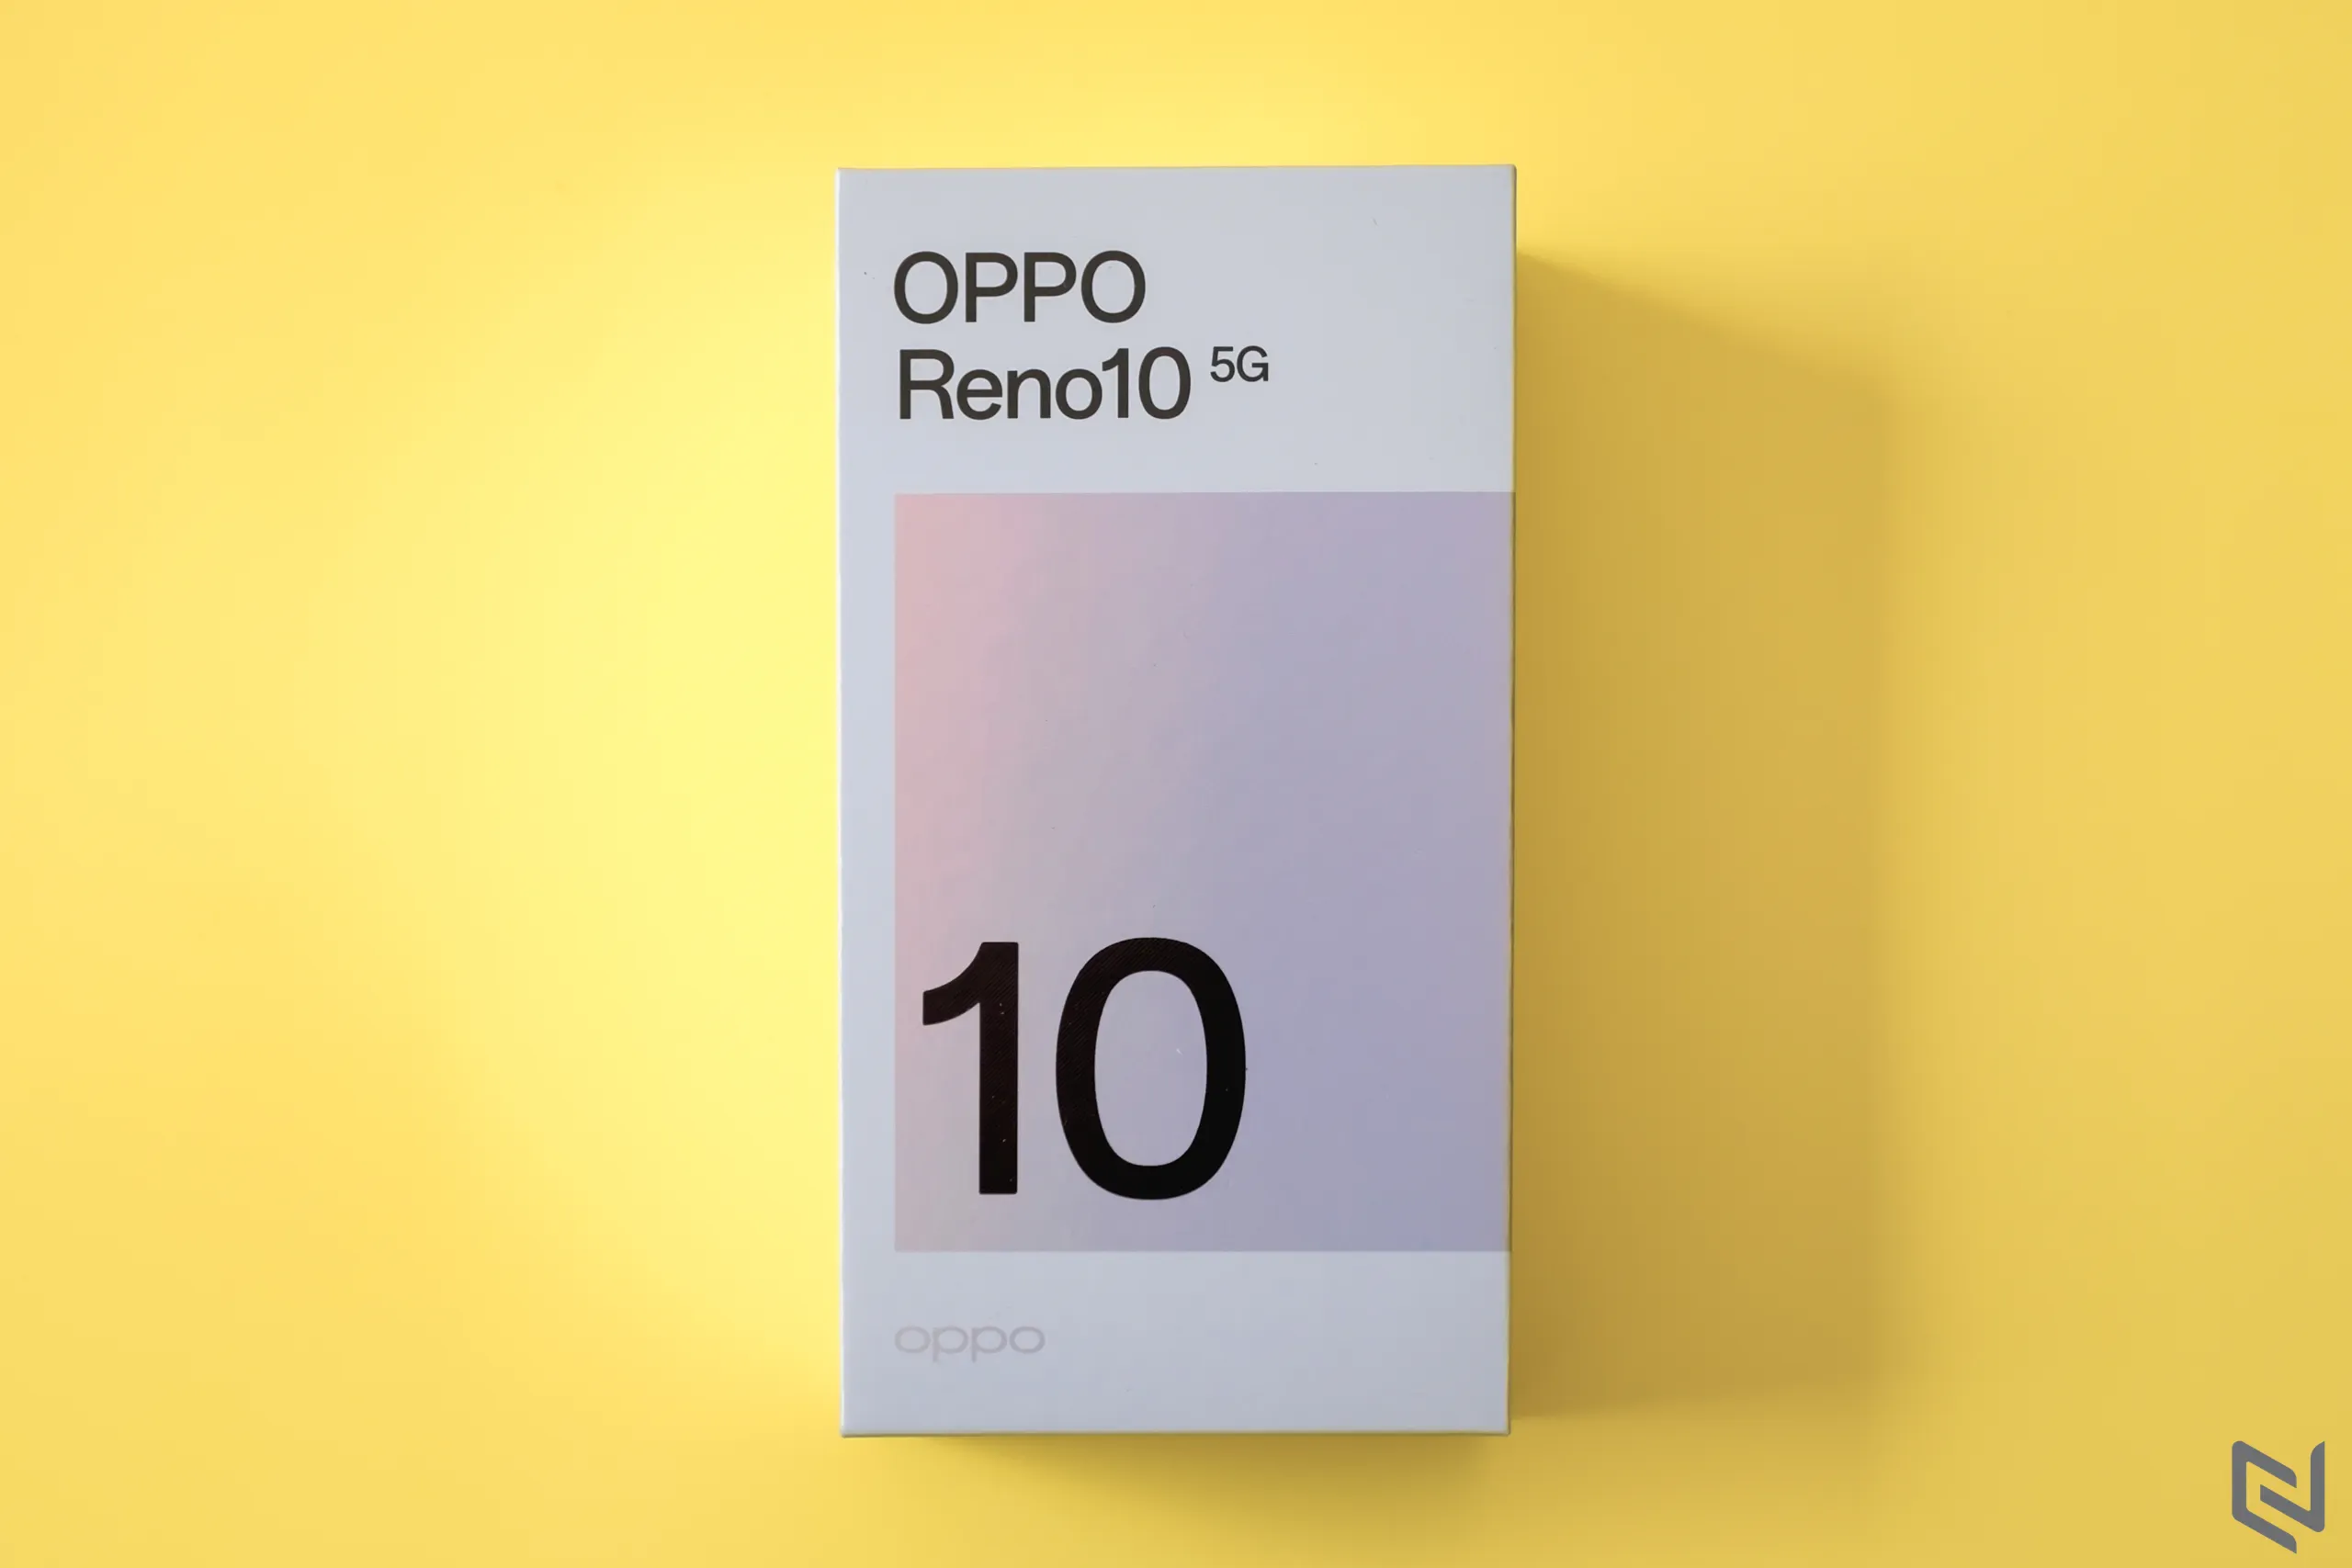 Mở hộp OPPO Reno10 5G: Thiết kế bắt mắt, màn hình ấn tượng, nâng cấp camera cùng sạc nhanh 67W